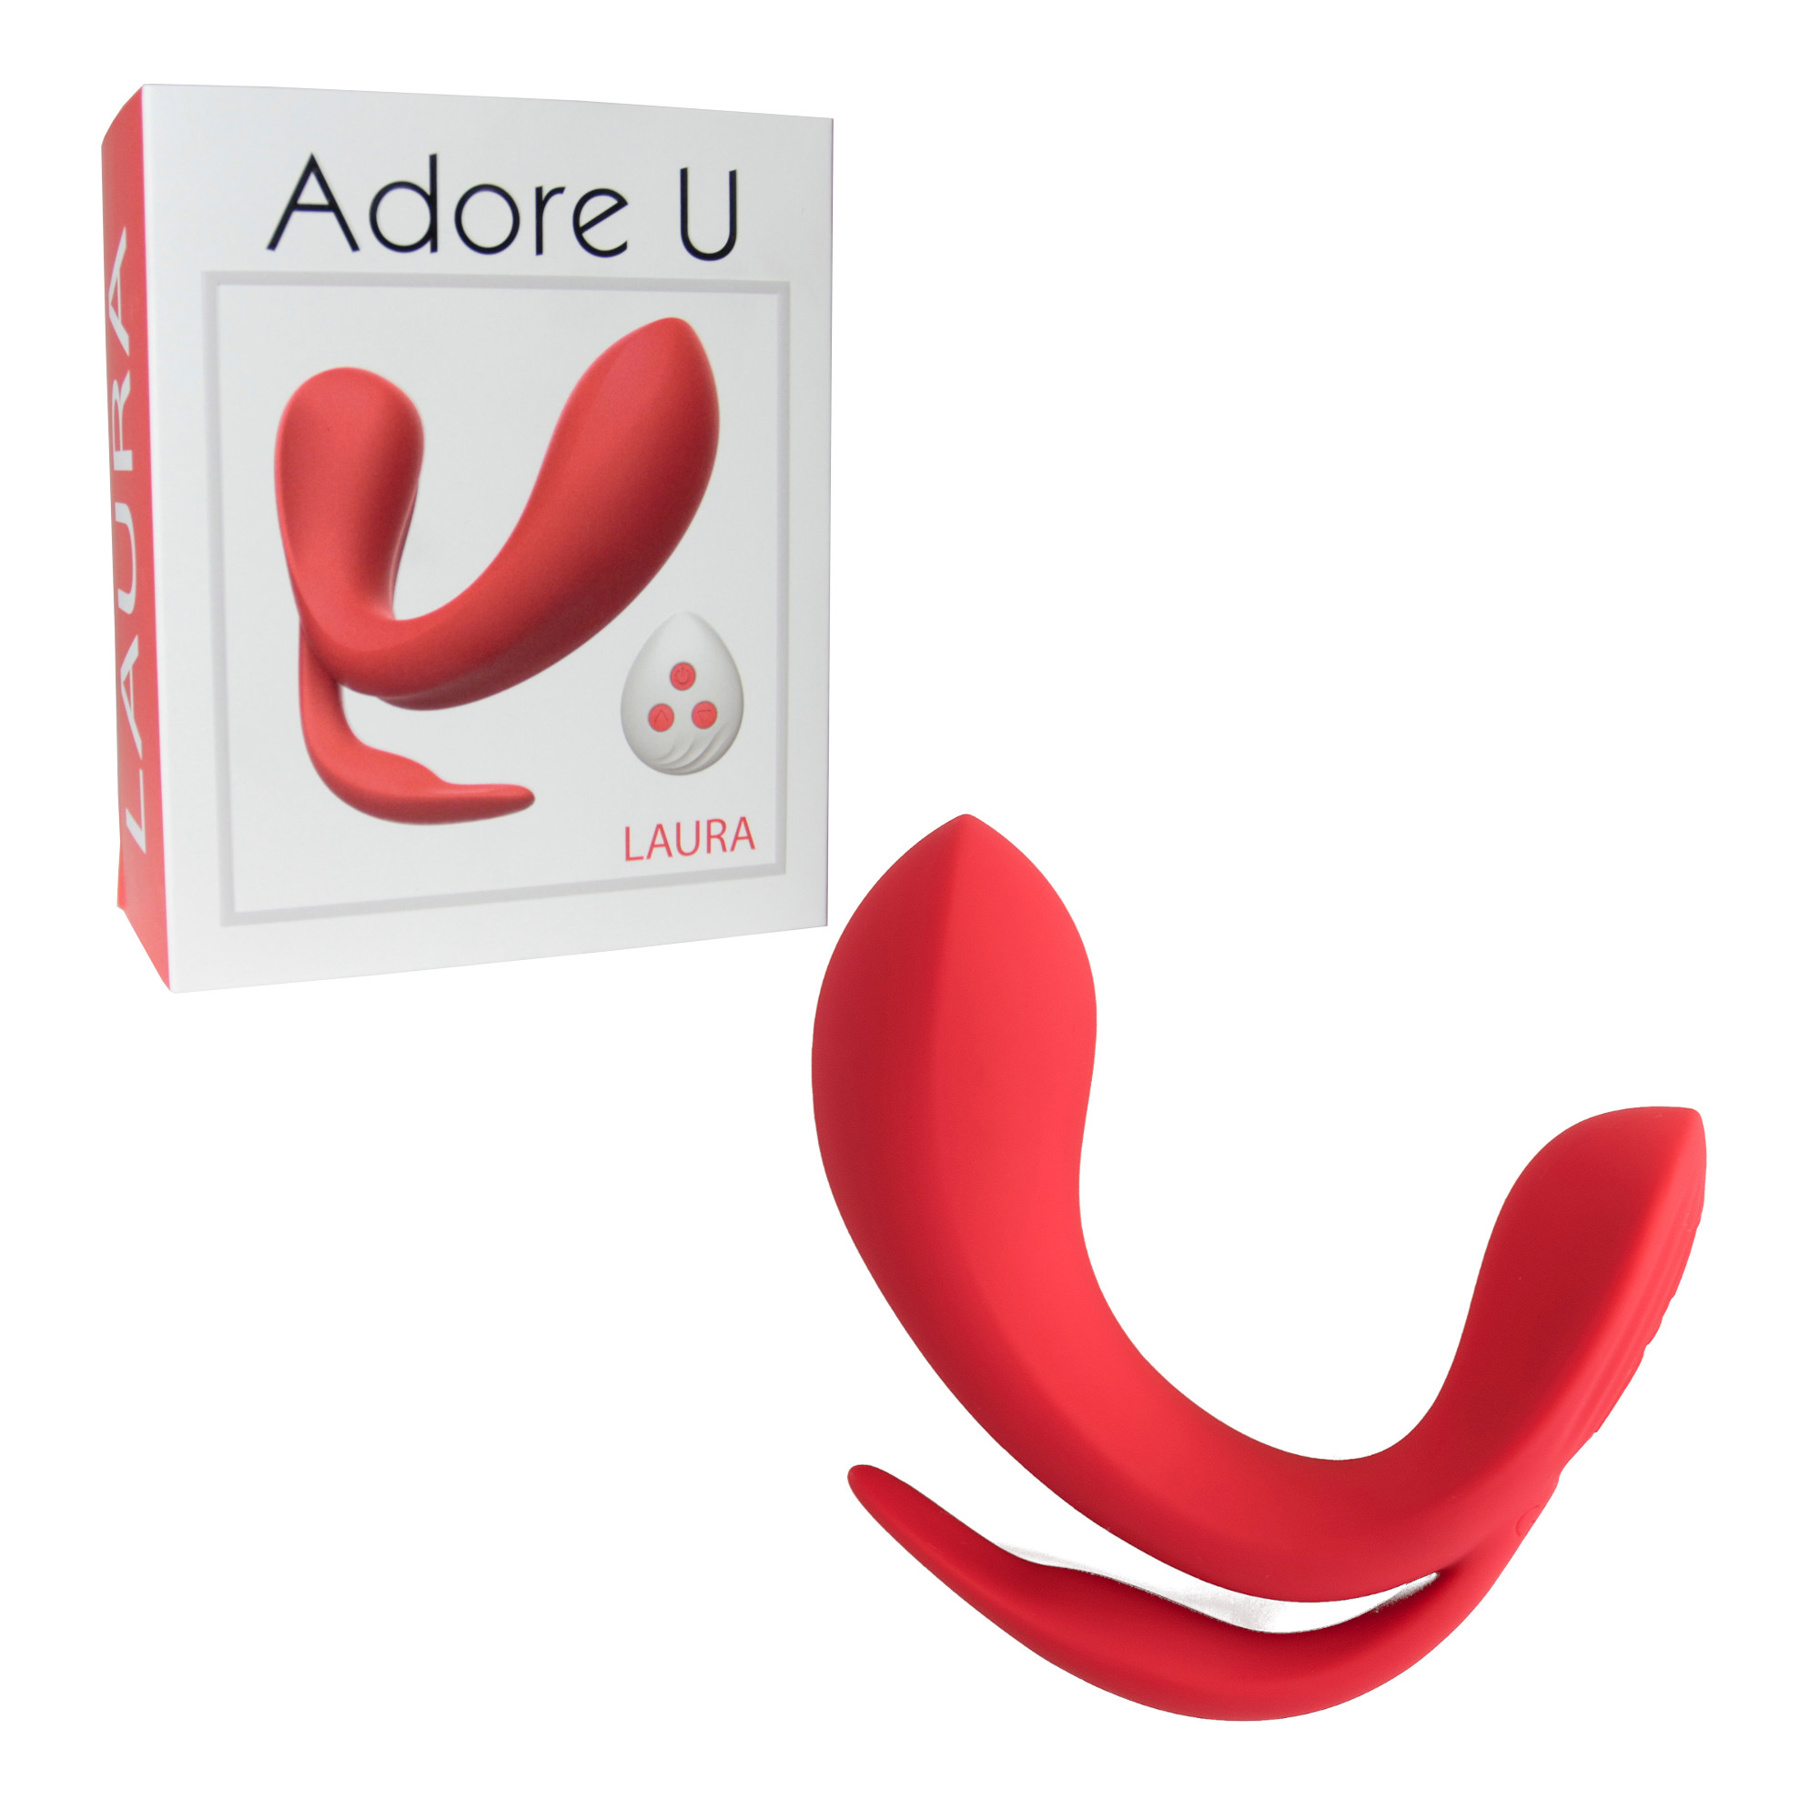 Voici Laura de Adore U, qui combine plaisir du point G, du clitoris et la stimulation anale!